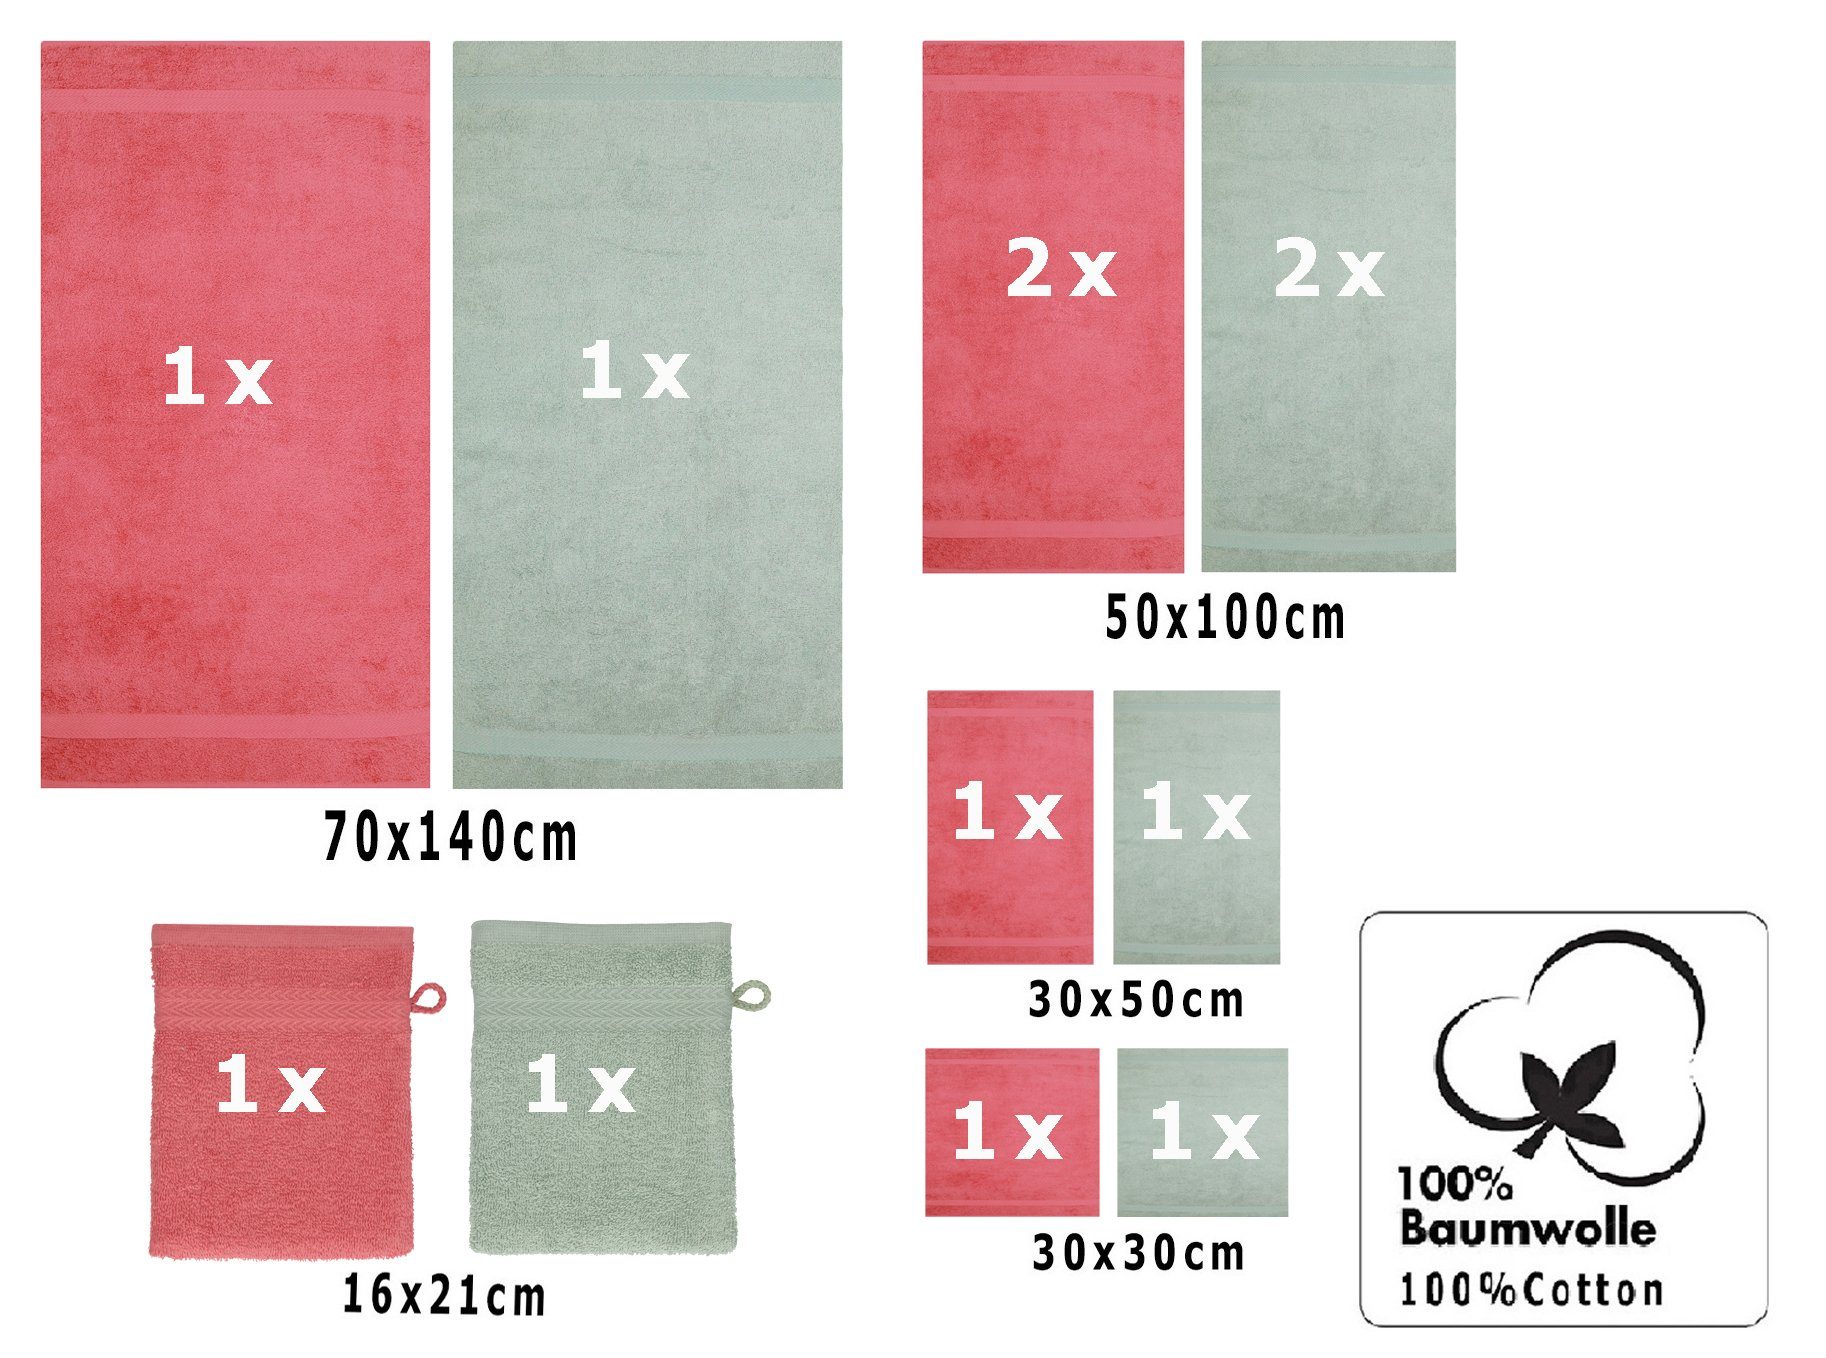 12-TLG. Handtuch Premium Betz Handtuch Set Baumwolle, Himbeere/heugrün, (12-tlg) Set